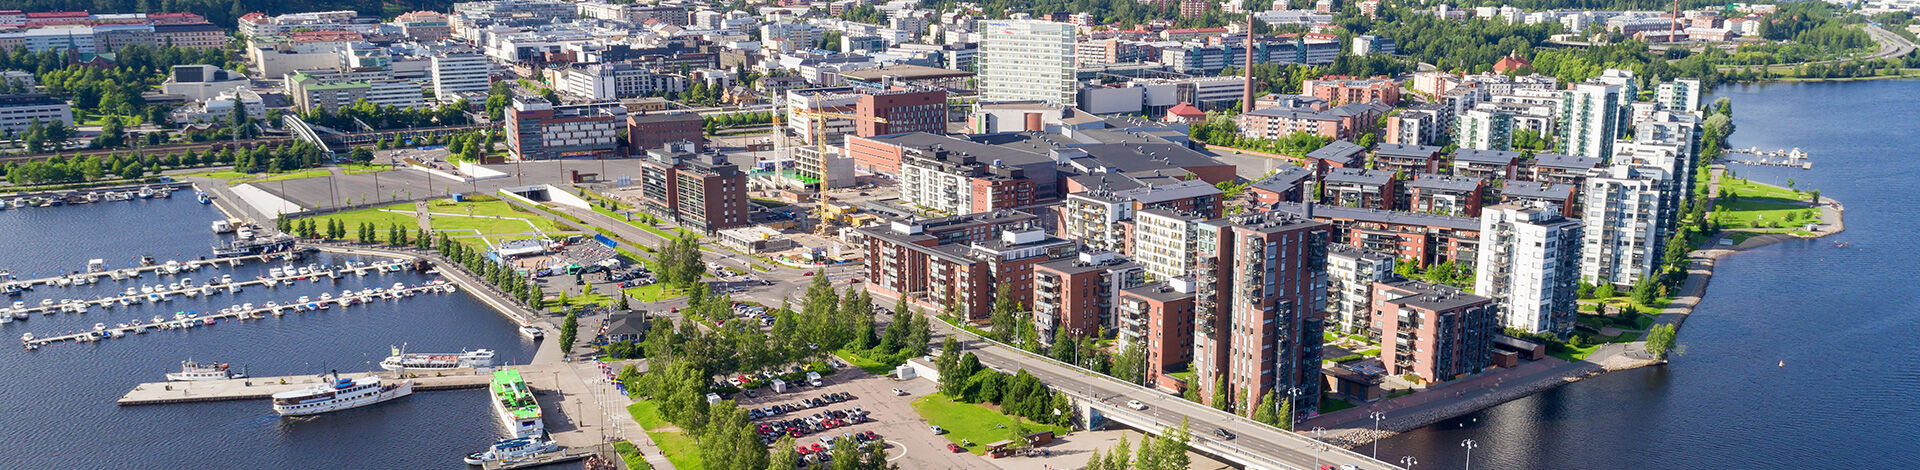 Tutustu Etuovi.com ostoilmoitukseen 58625519 alueelta Jyväskylä, Kanavuori. Löydä asunnollesi ostaja jo tänään!